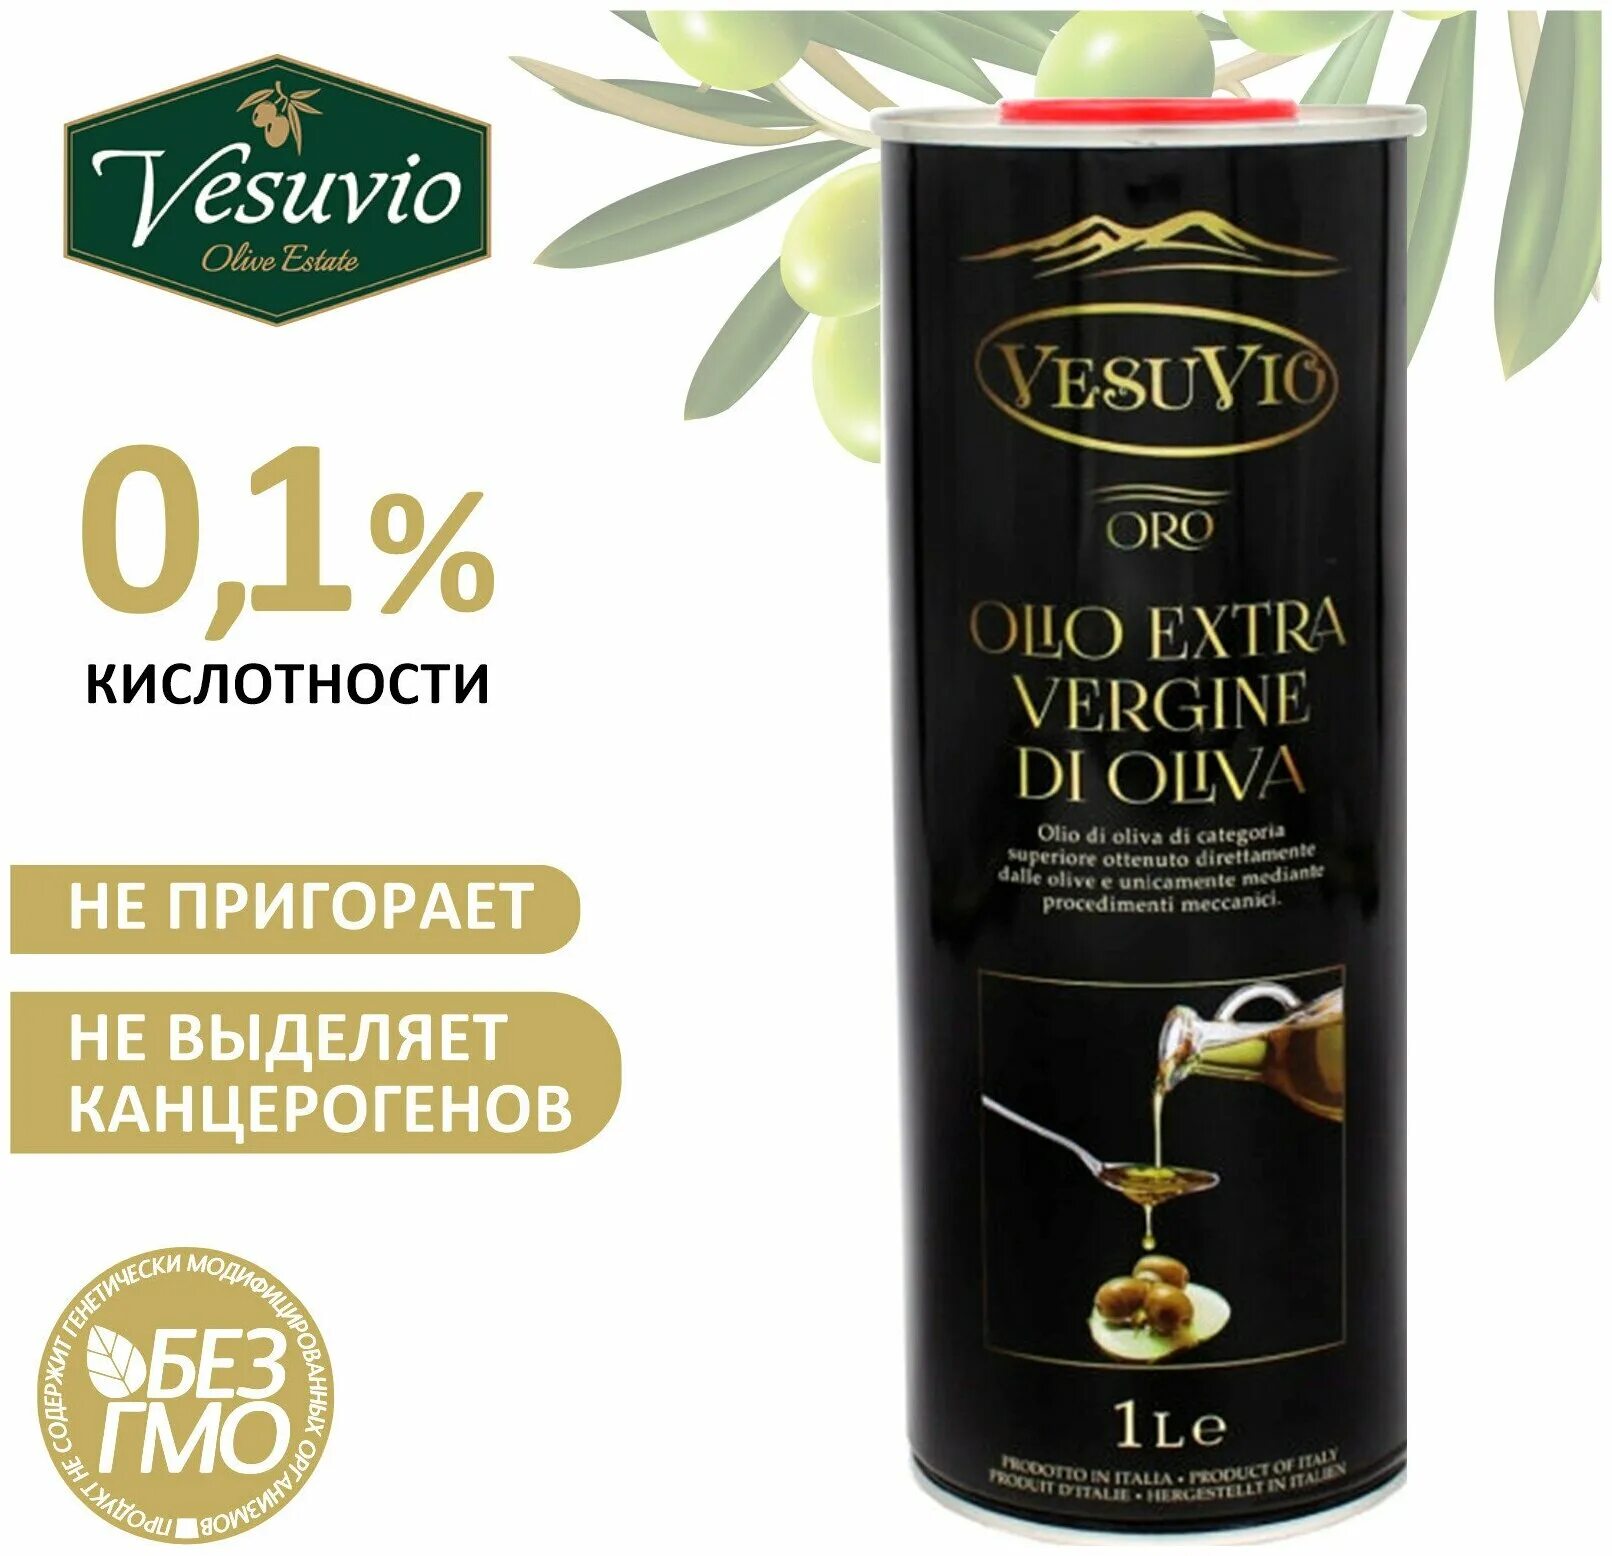 Оливковое масло oliva extra virgin. Vesuvio масло оливковое. Оливковое масло 1 Vesuvio. Масло оливковое Extra Virgin 1л. Масло авокадо Vesuvio.